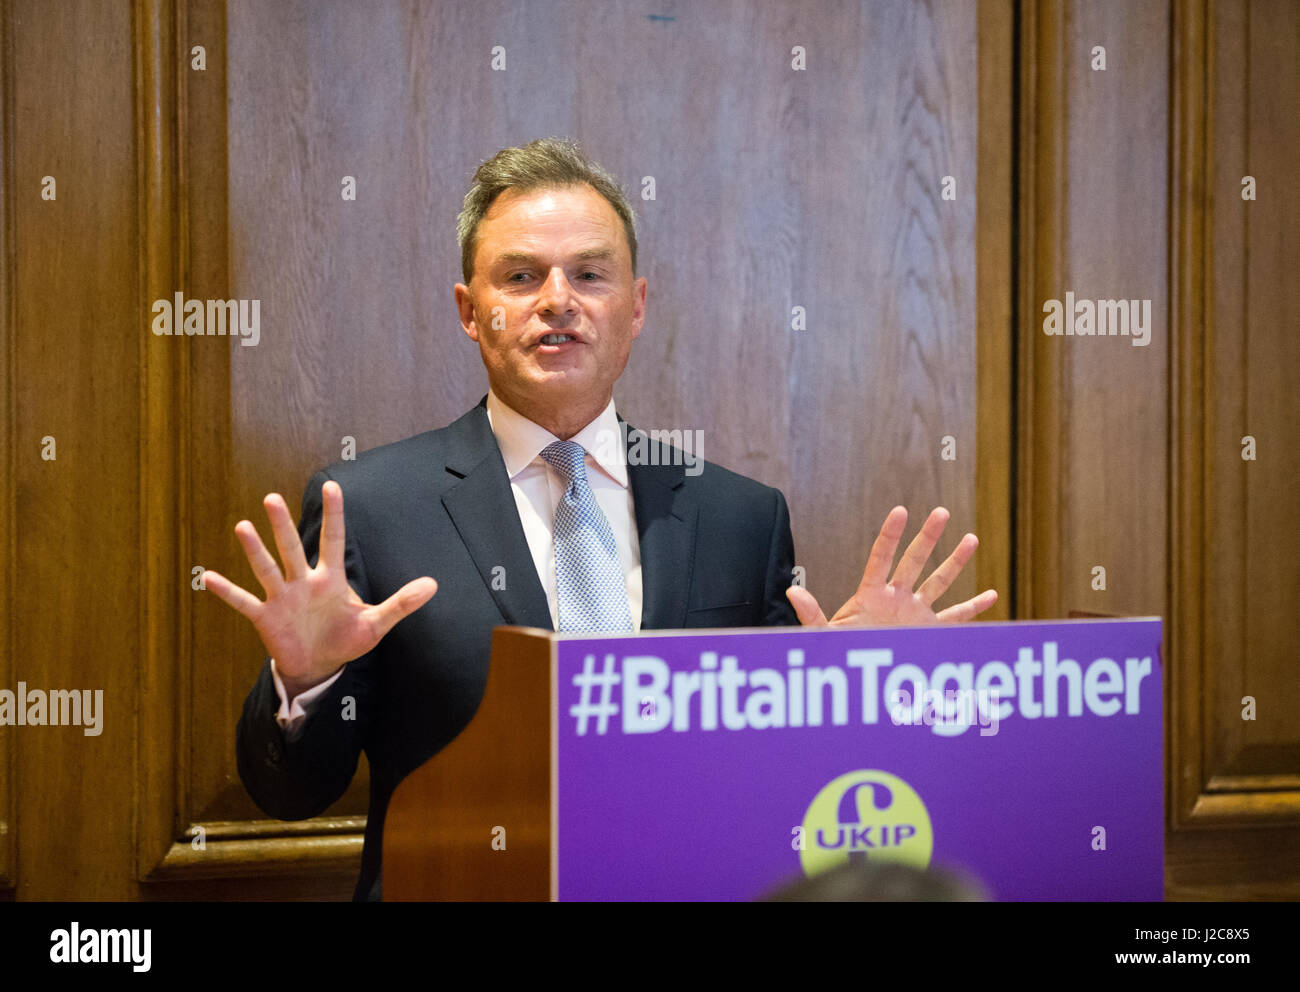 Peter Whittle, chef adjoint de l'UKIP, UKIP lors d'une conférence de presse à Londres Banque D'Images